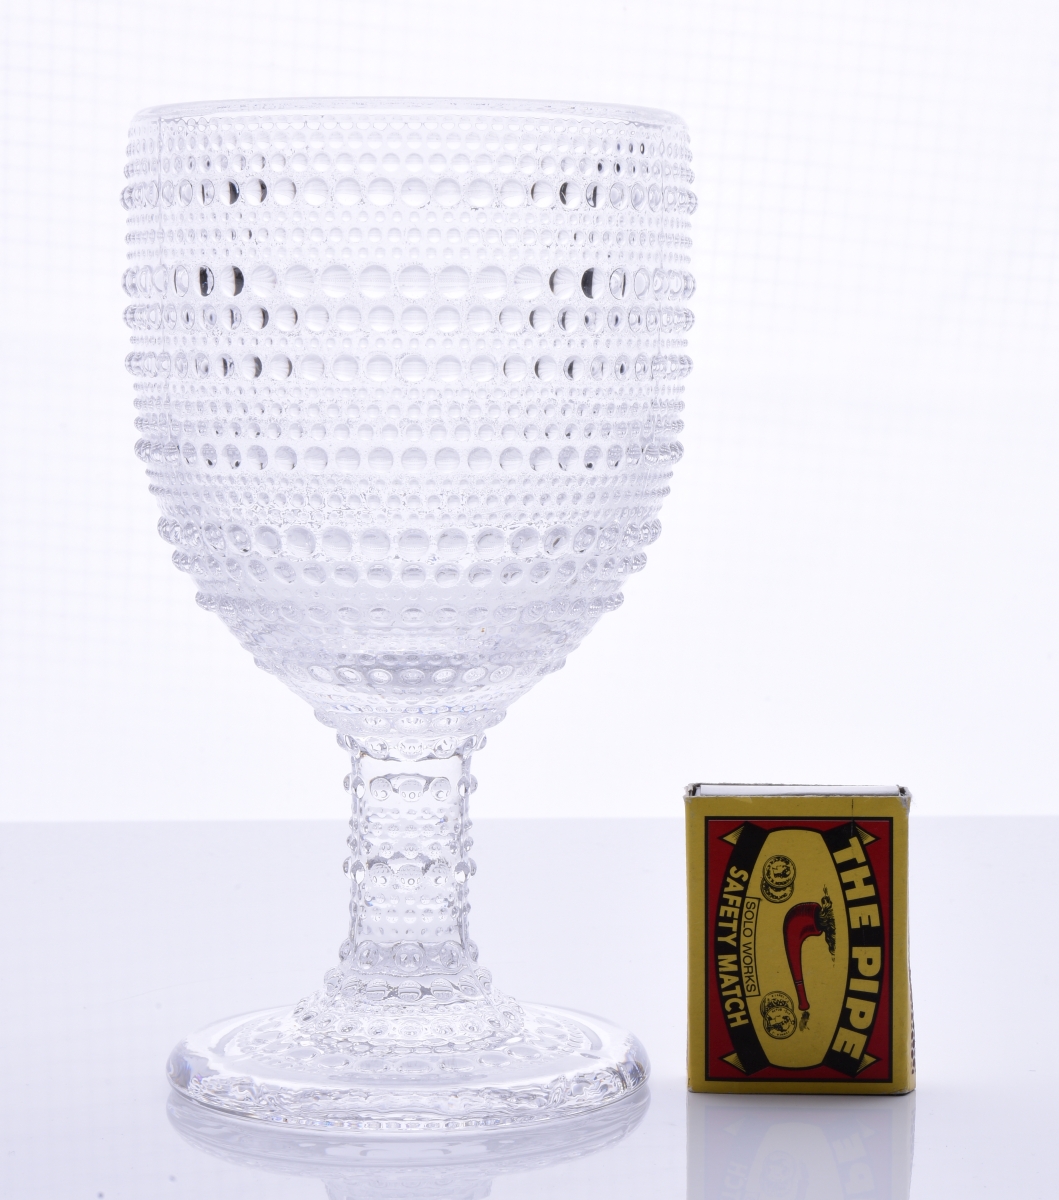 XL Sklenený pohár na horúce aj studené s reliéfnym povrchom FROZEN